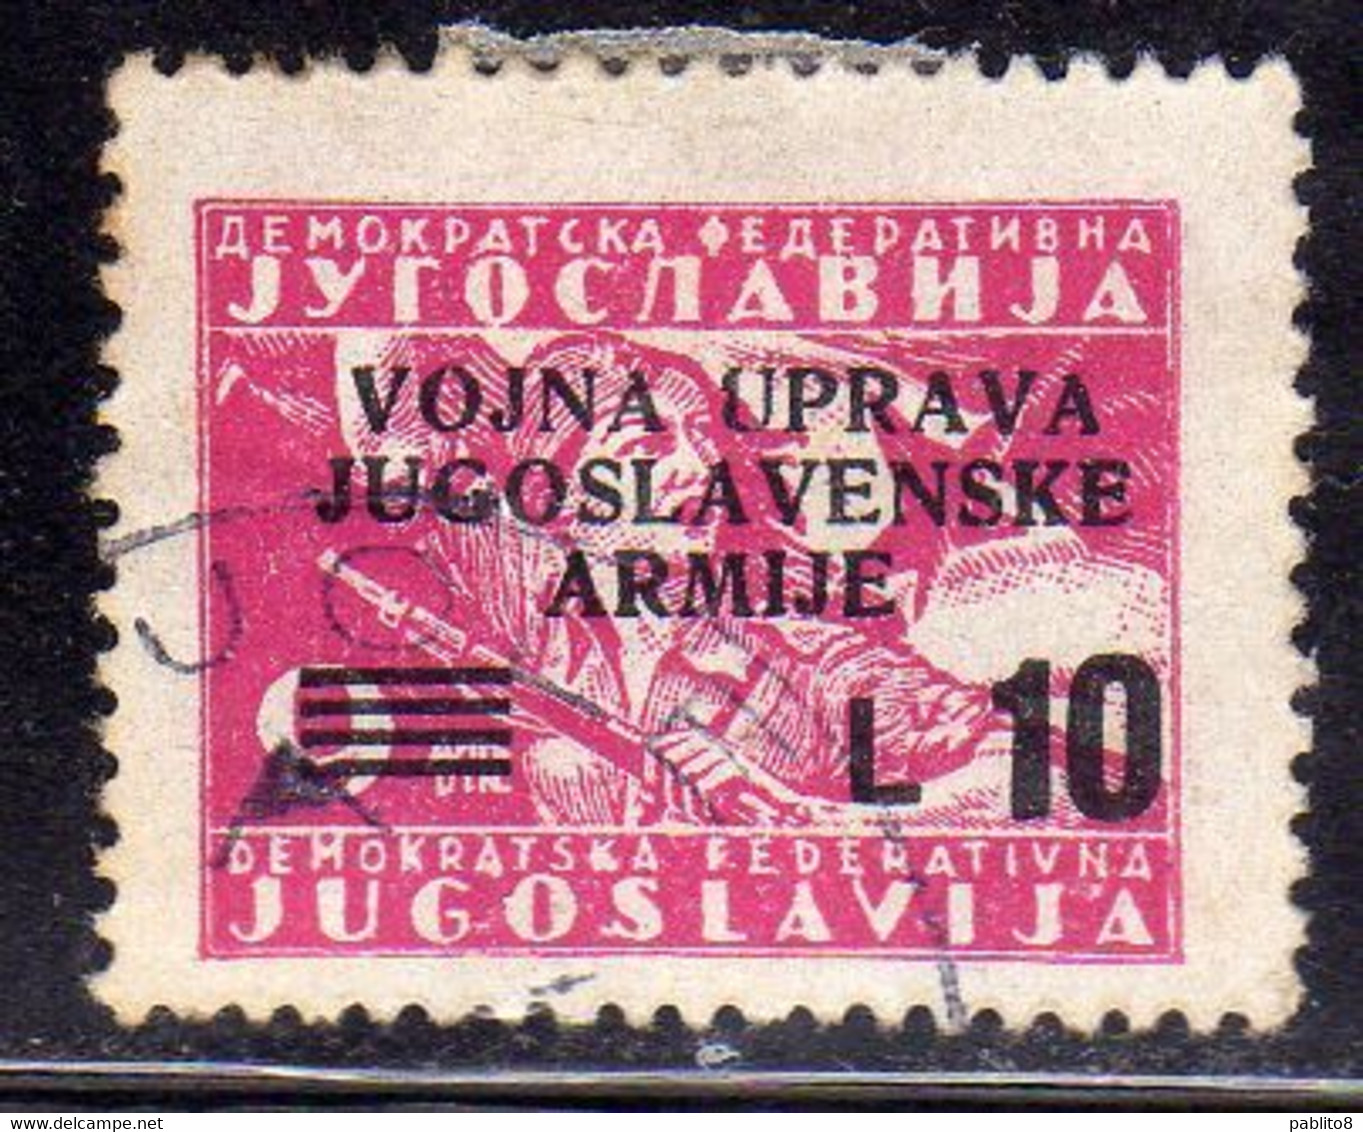 ISTRIA E LITORALE SLOVENO 1947 FRANCOBOLLI DI YUGOSLAVIA LIRE 10 SU 9d USATO USED OBLITERE' - Yugoslavian Occ.: Slovenian Shore